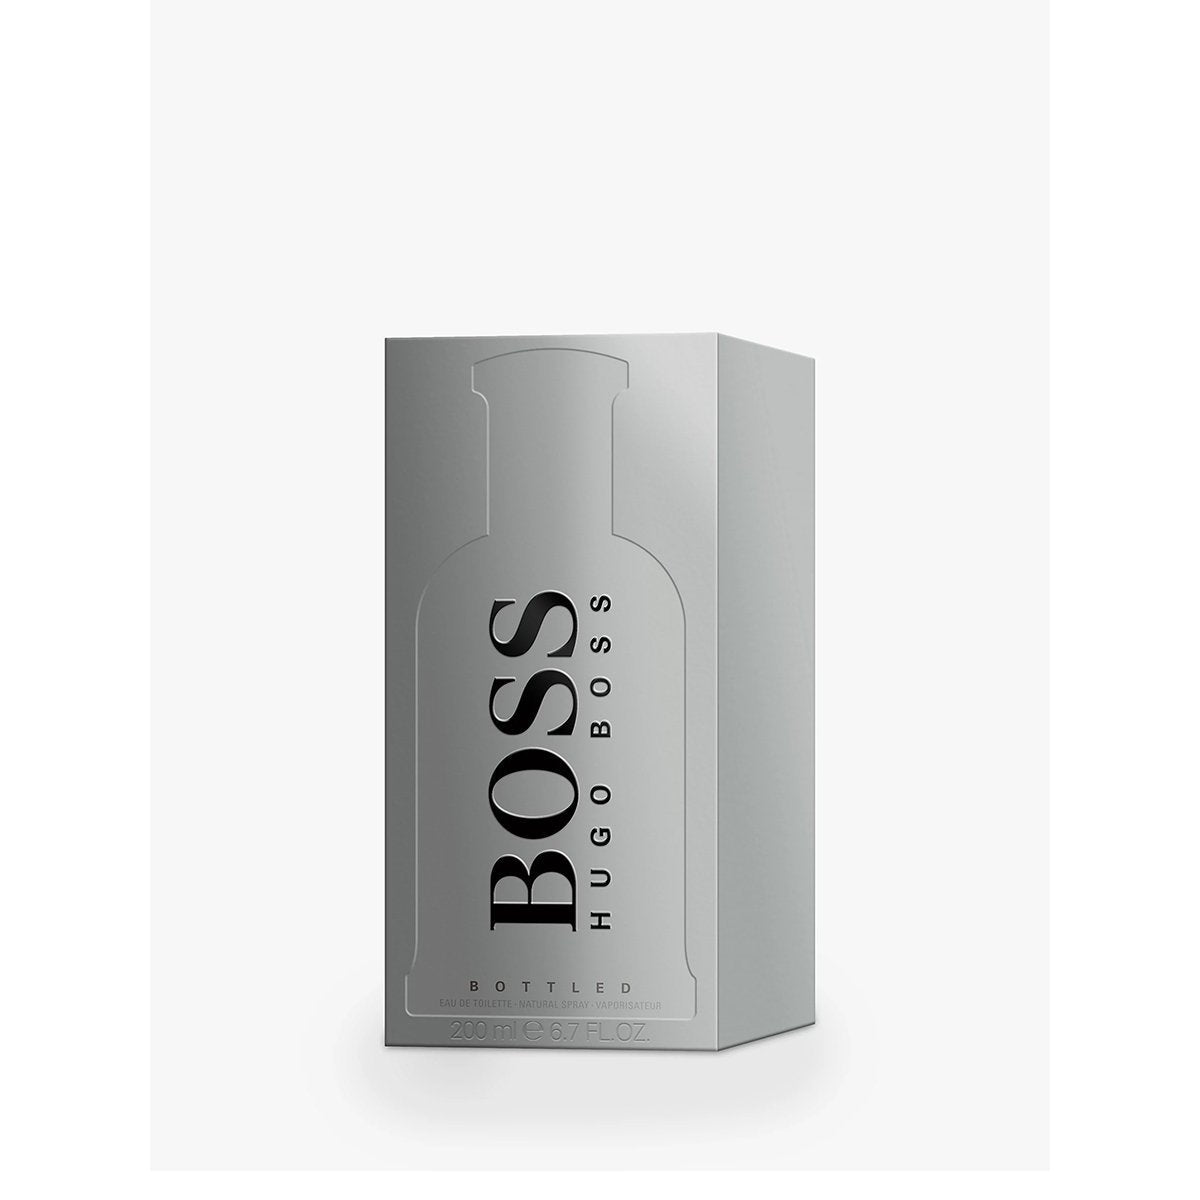 Hugo Boss Bottled Travel Set For Men - My Perfume Shop Australia